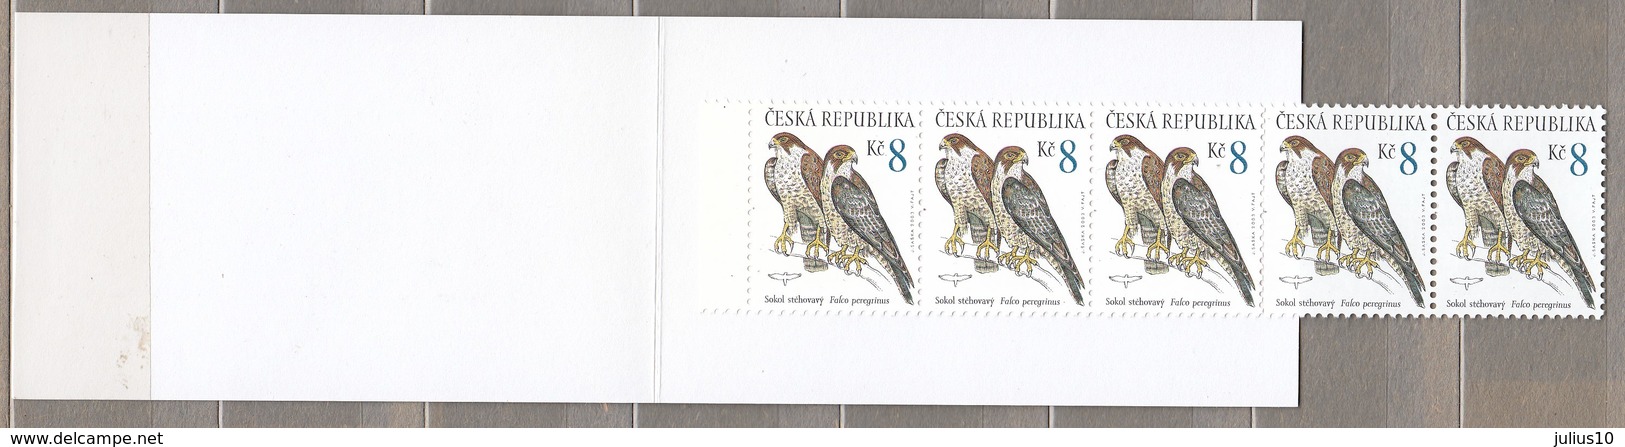 BIRDS Czech 2003 Eagle Booklet MNH Mi 375 (**) #B54 - Aigles & Rapaces Diurnes